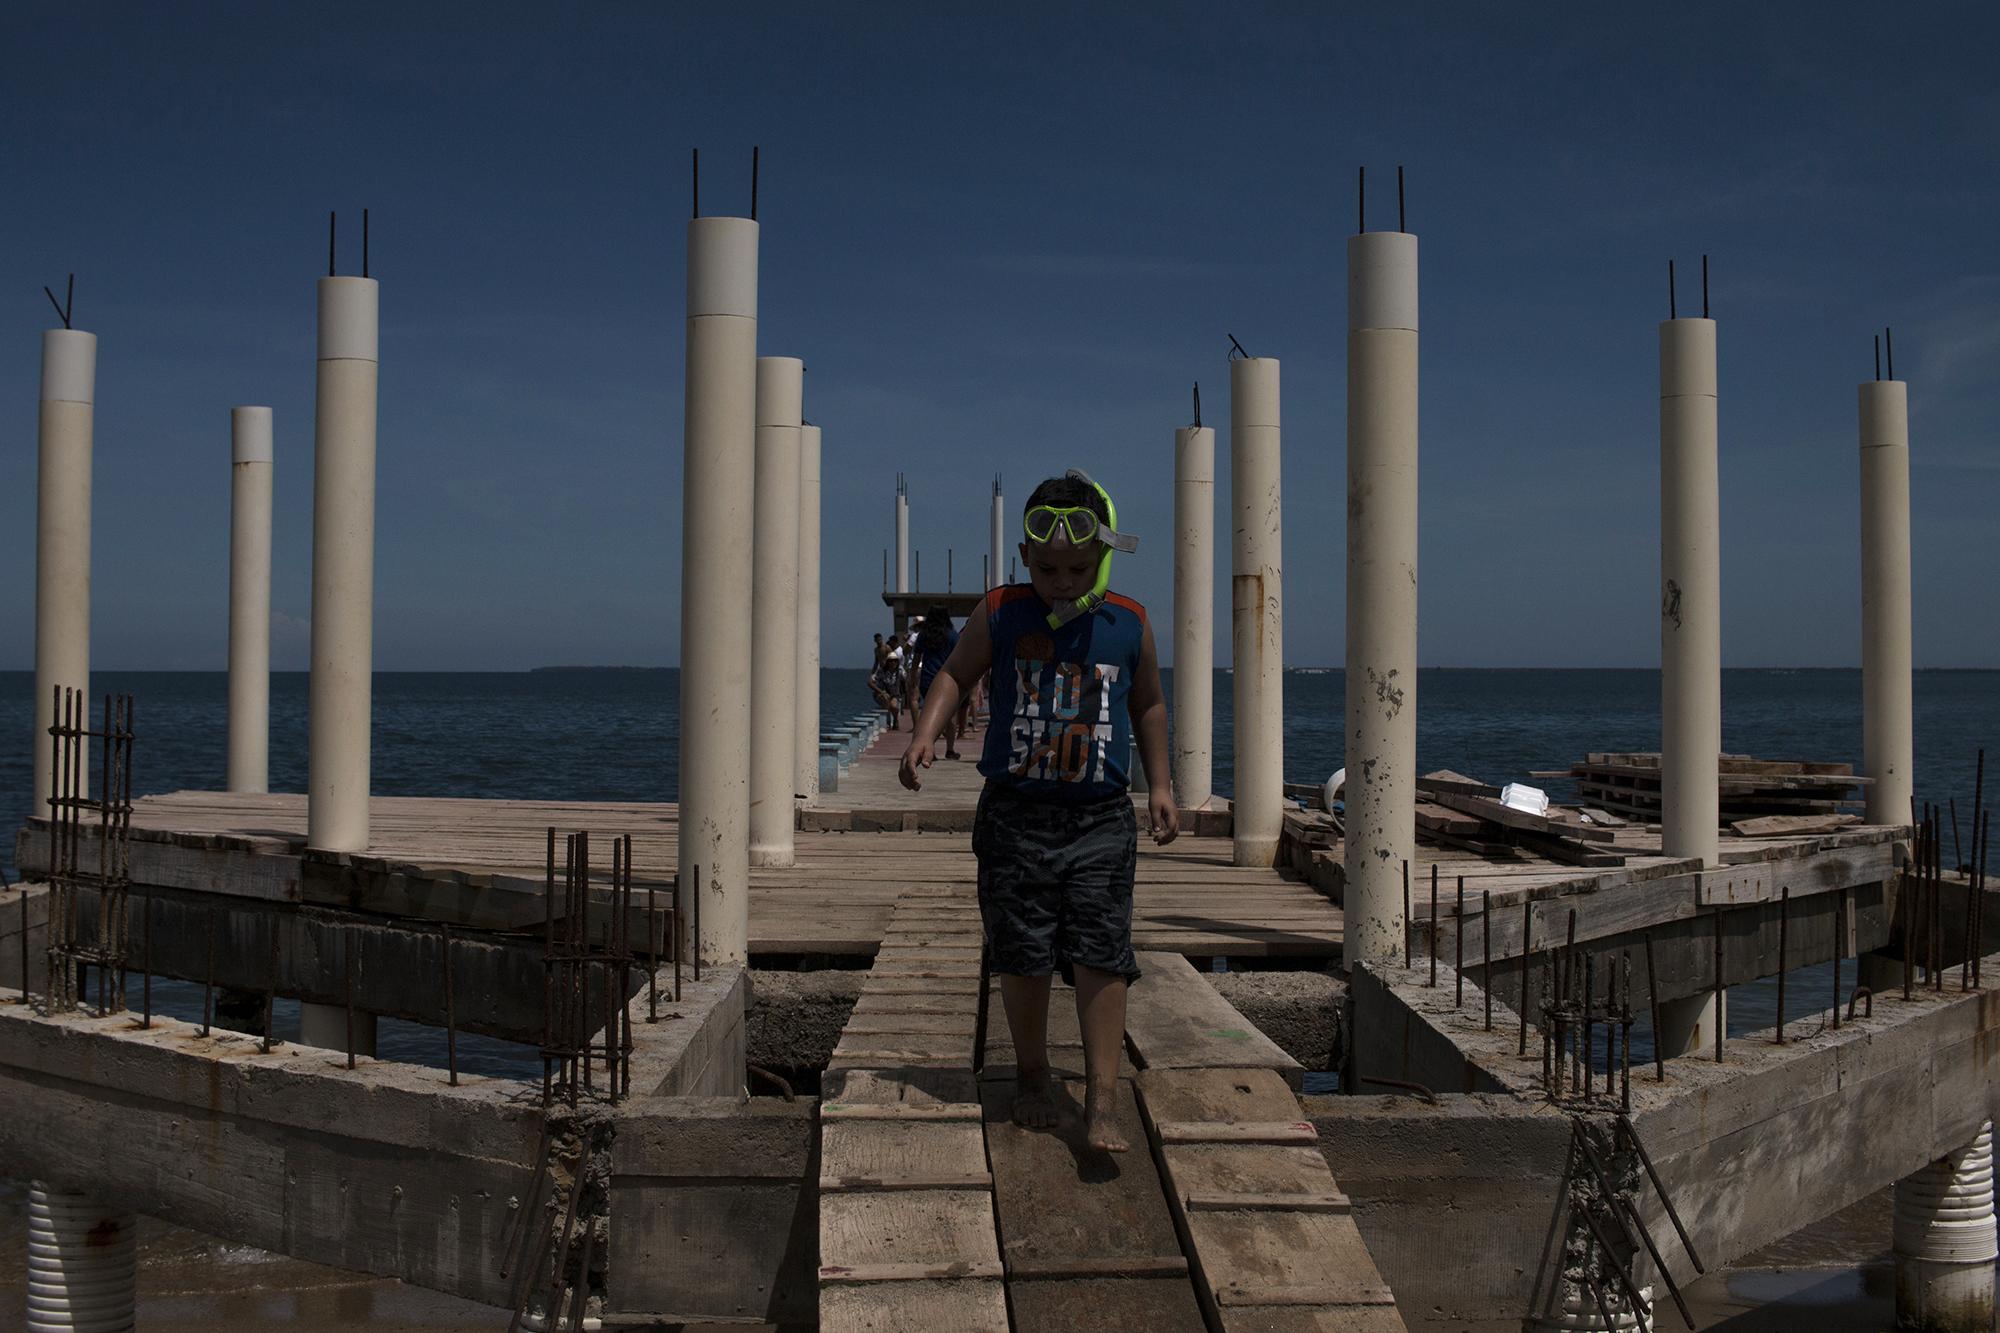 Dylan Alexander Banegas, 7, plays with his snorkel in a half-built construction project on a dock along Trujillo Bay. Photo: Víctor Peña/El Faro